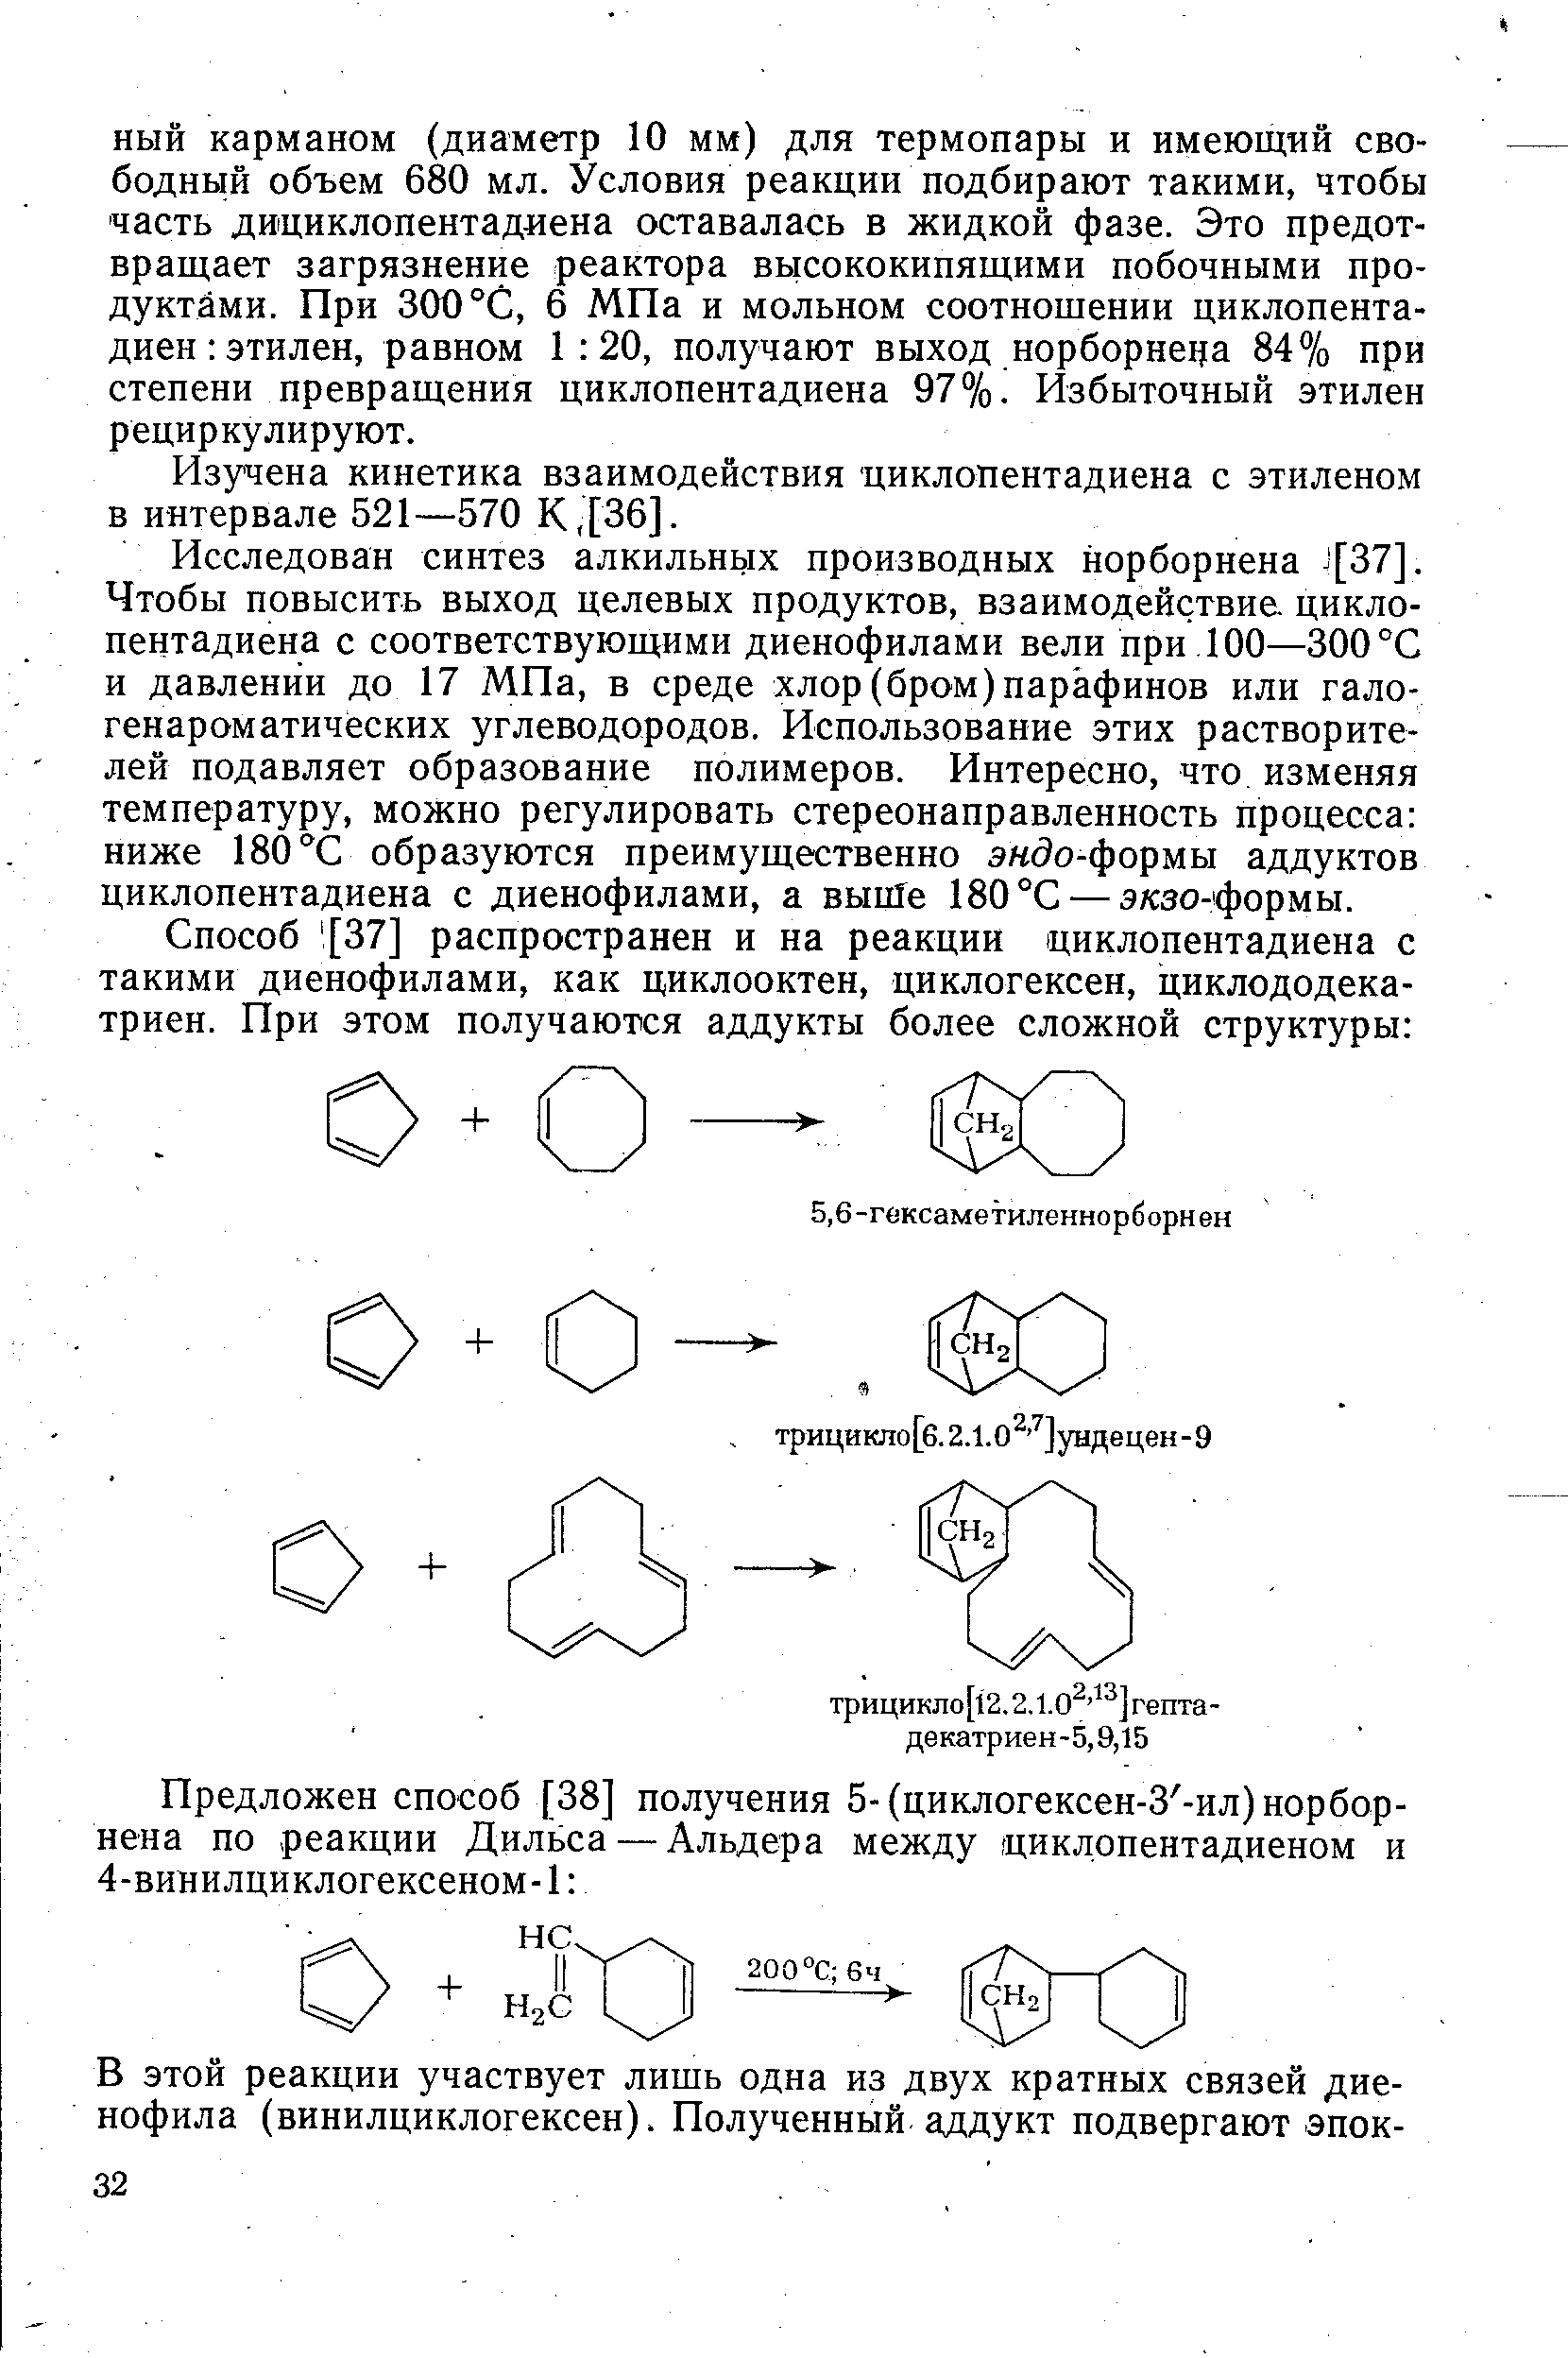 Изучена кинетика взаимодействия циклопентадиена с этиленом в интервале 521—570 К,[36].